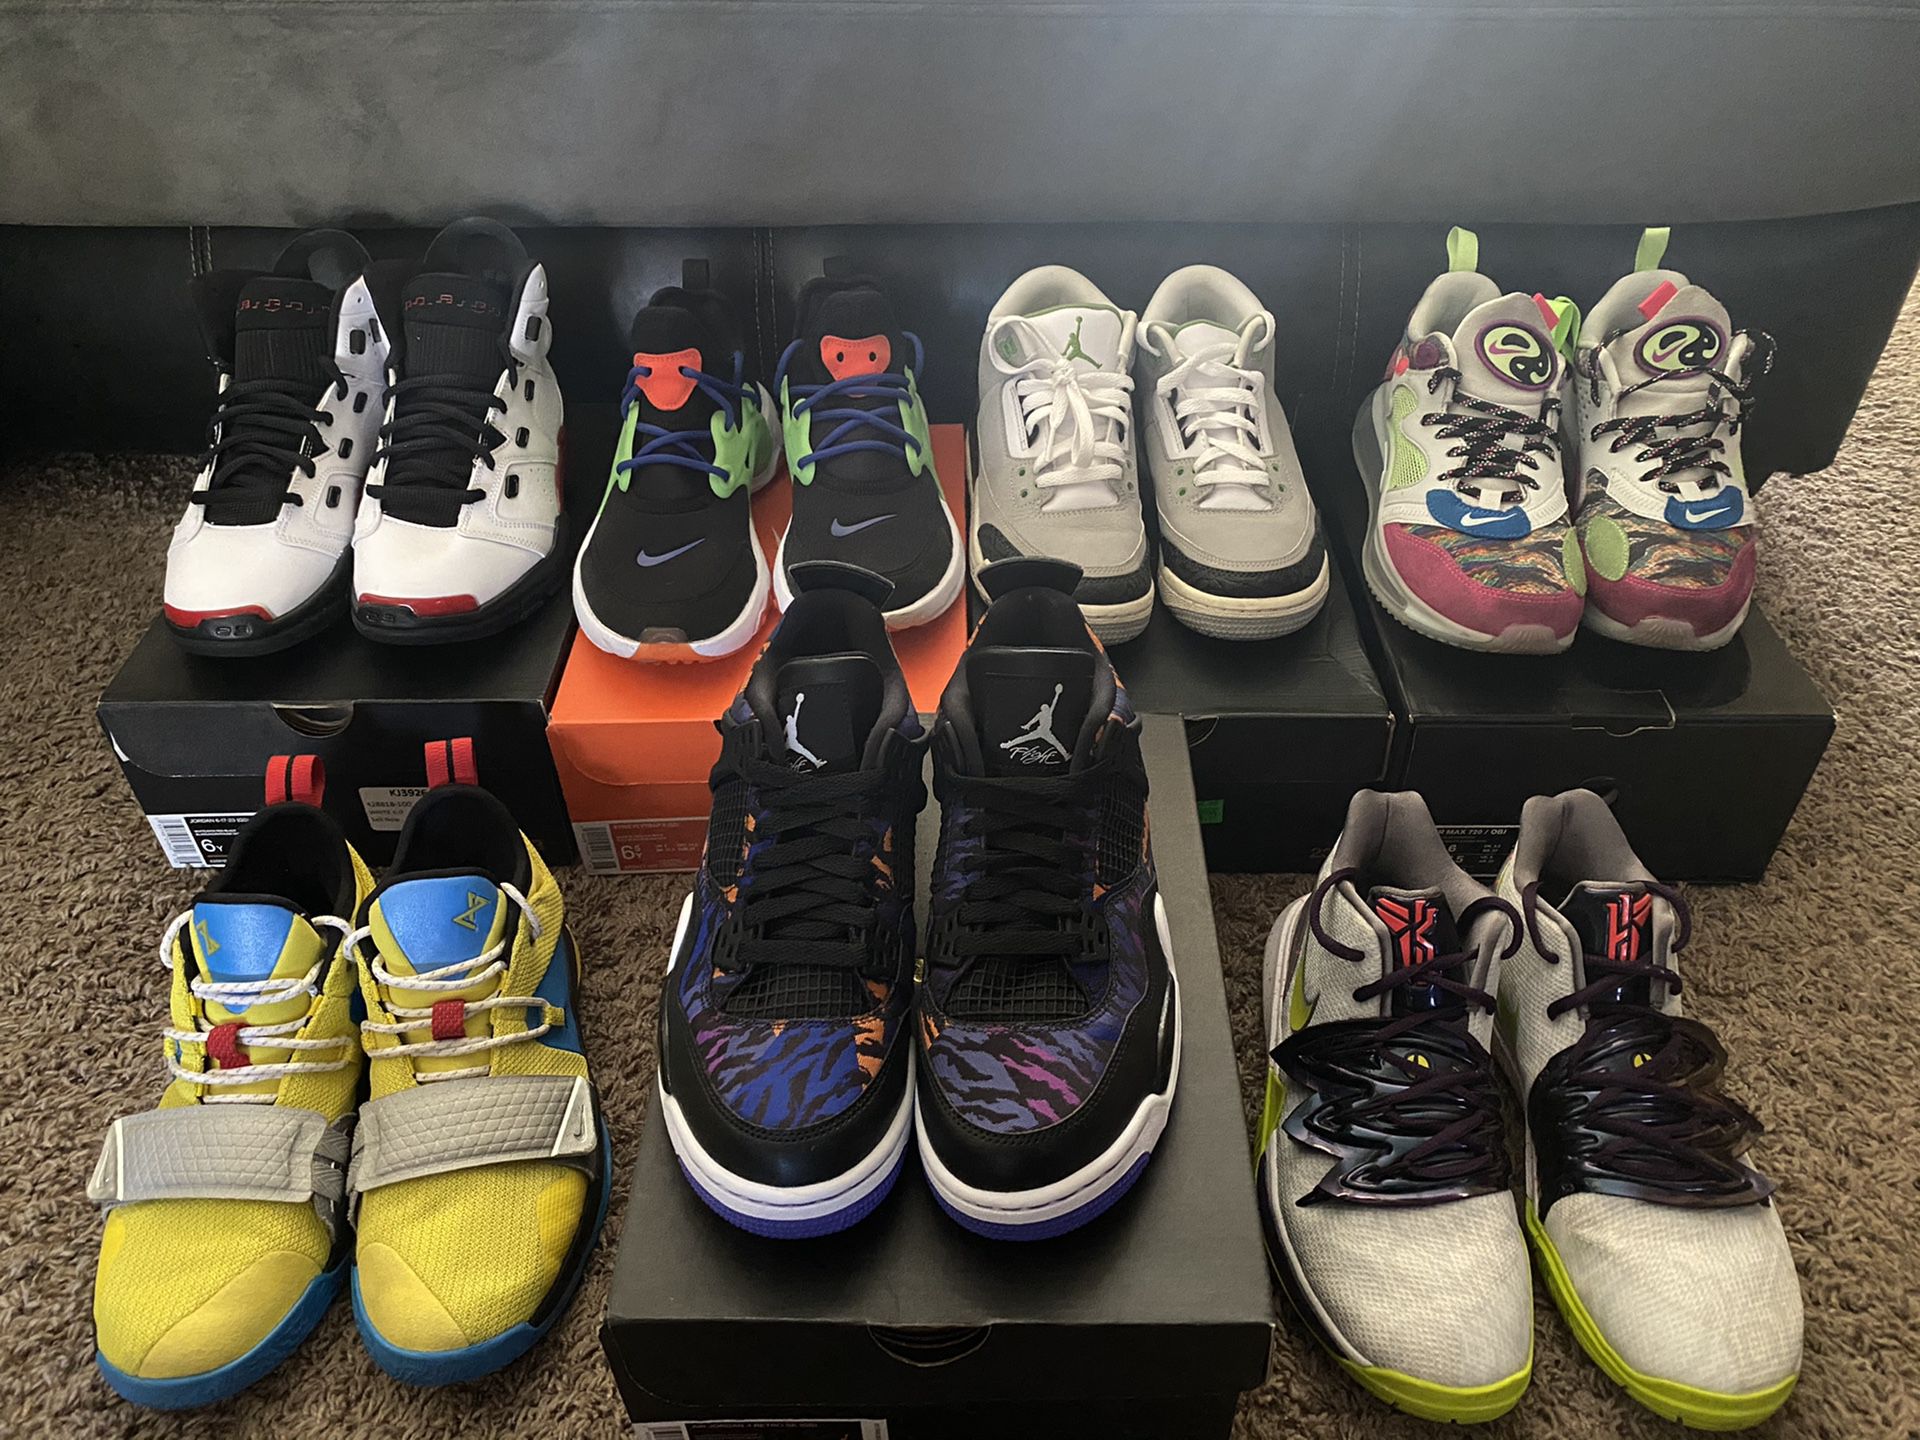 Nike Jordan lot 7 pairs total